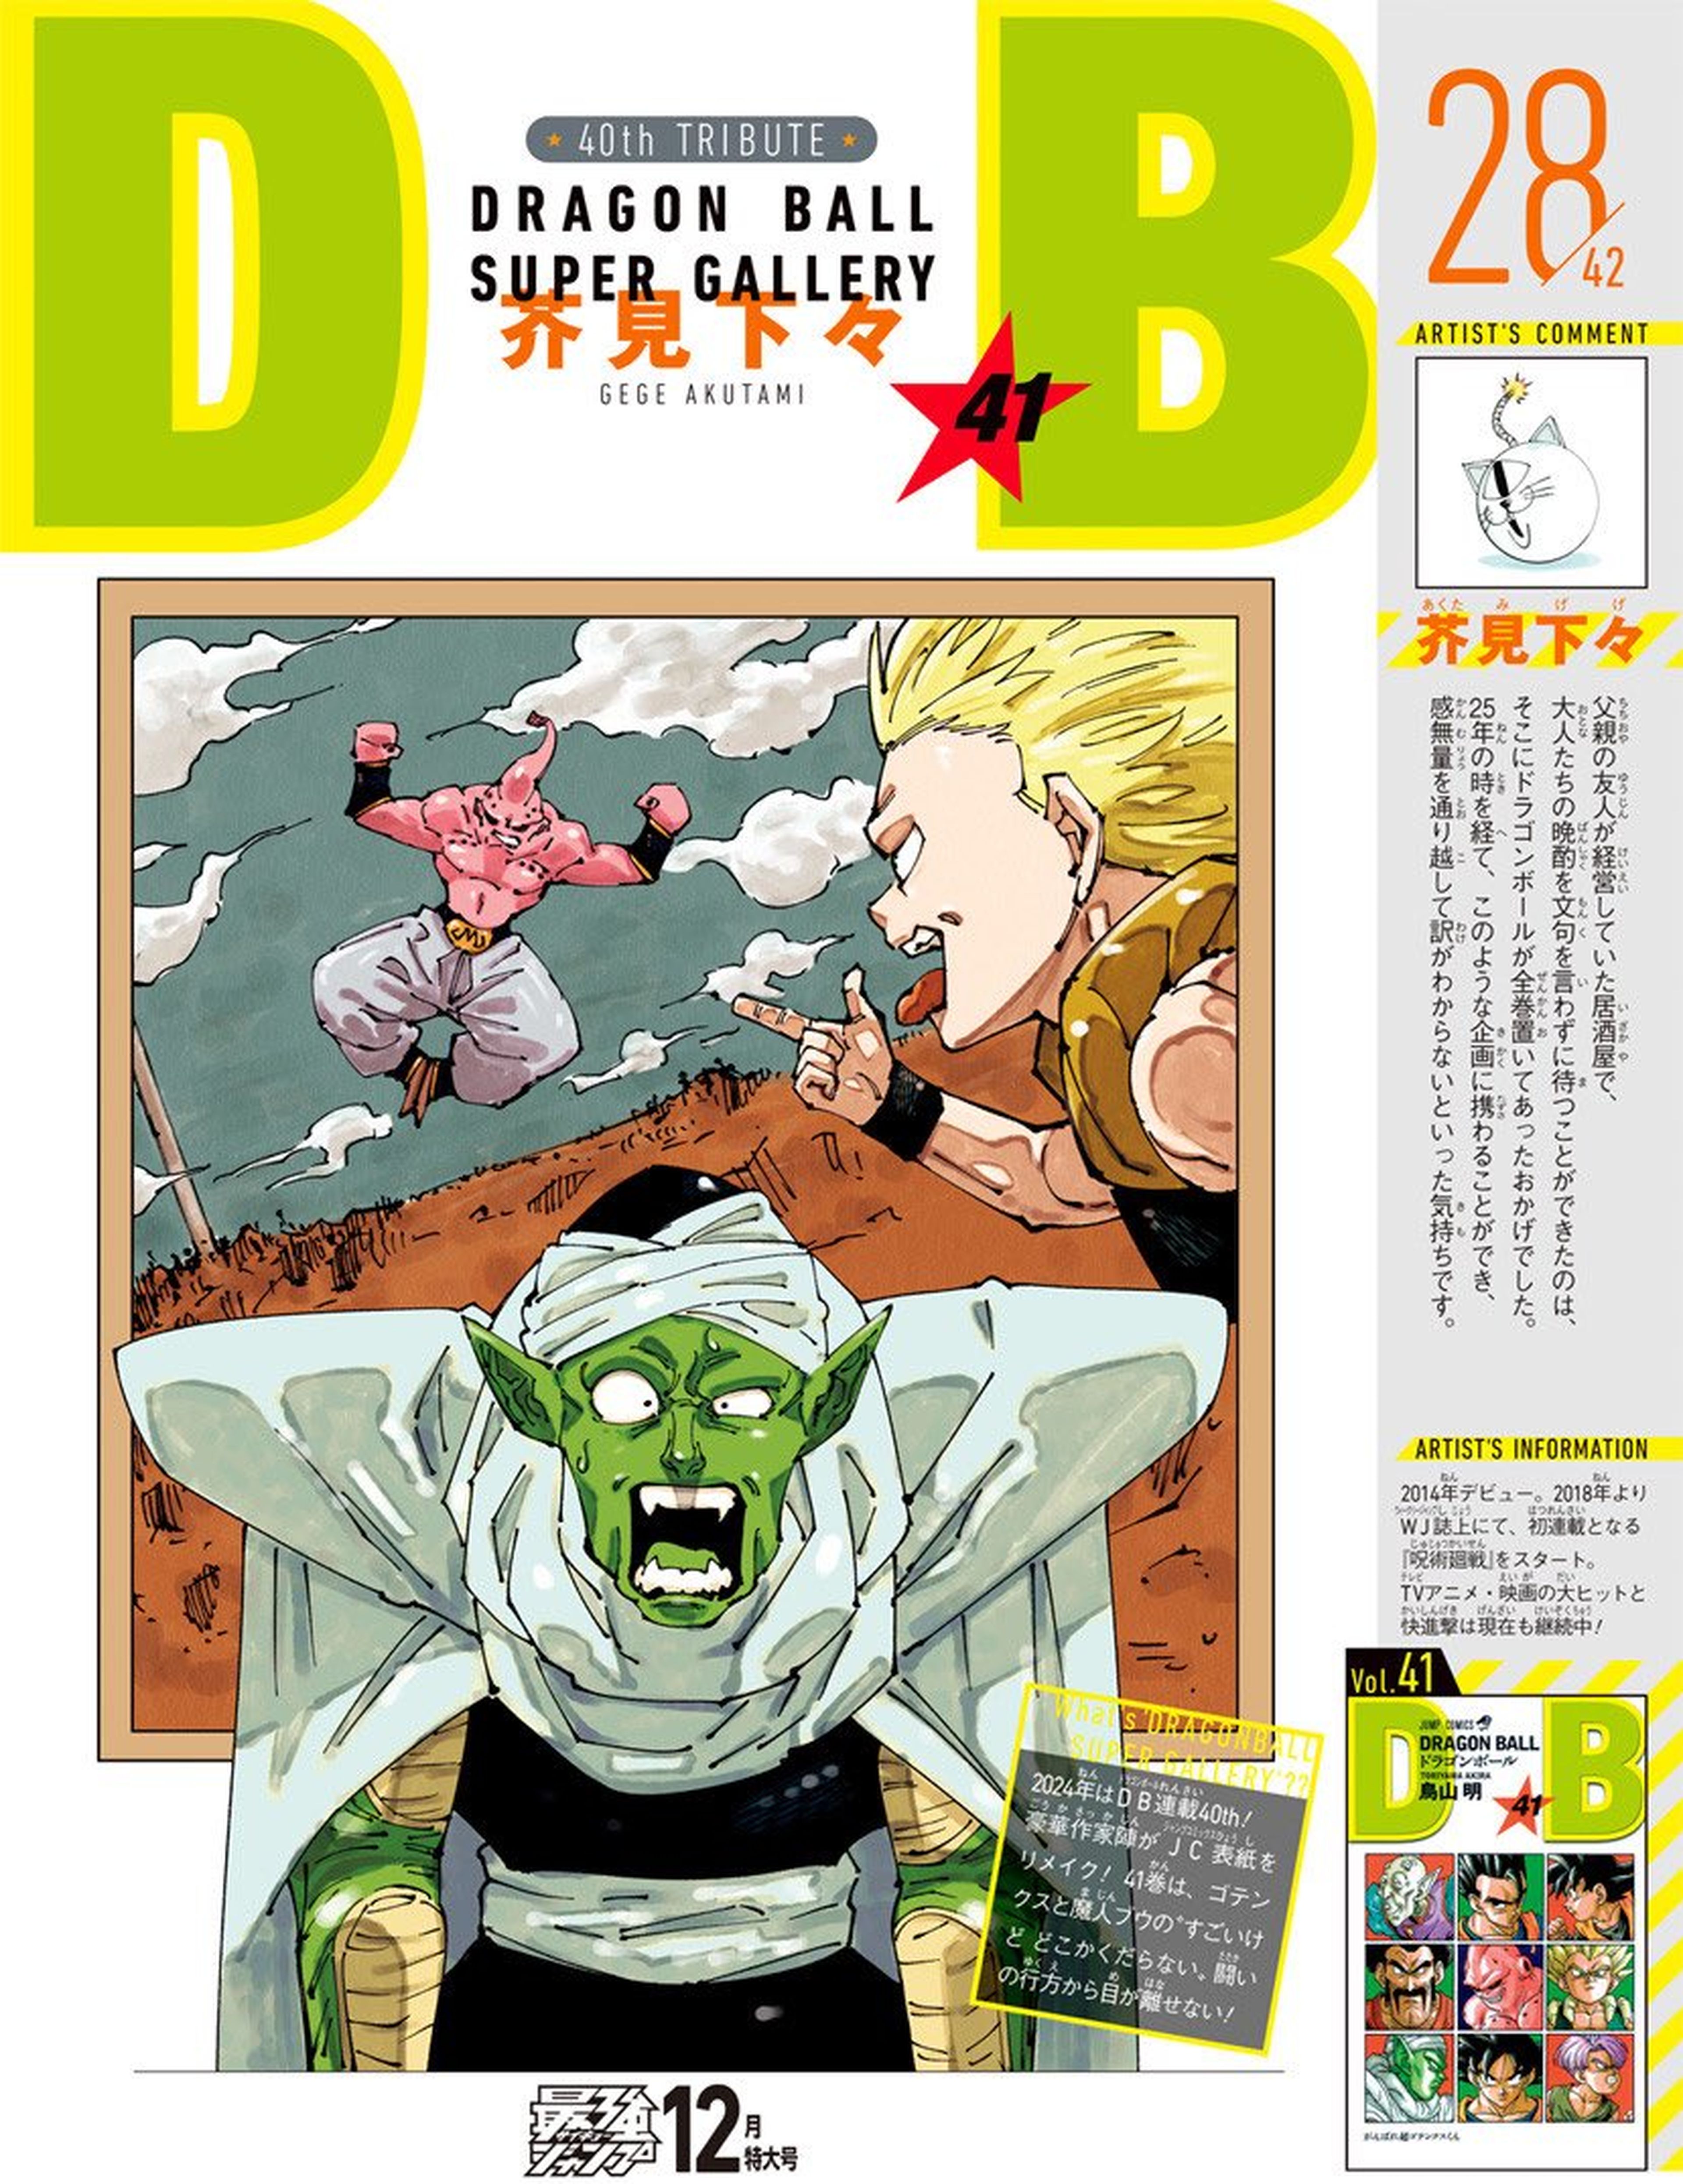 Dragon Ball - Gege Akutami, autor de Jujutsu Kaisen, dibuja una mítica portada de la serie de Akira Toriyama y la cambia por completo